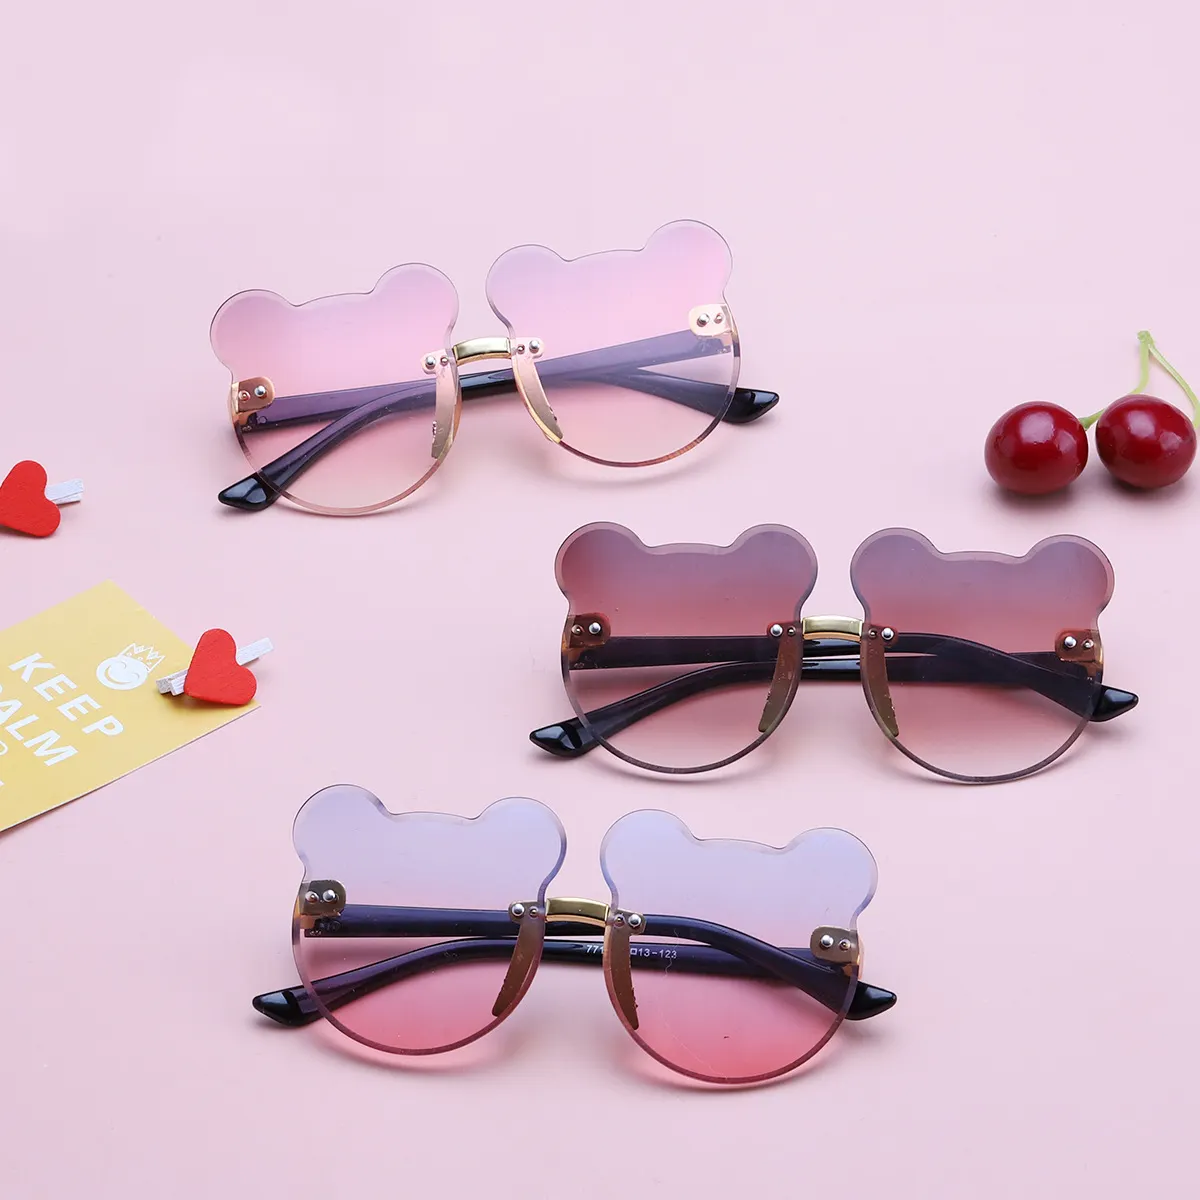 Niedliche bären förmige randlose Kinder-Sonnenbrille Trendy Children Fashion Sonnenbrille Kids Sun Glasses Shades für Mädchen Jungen